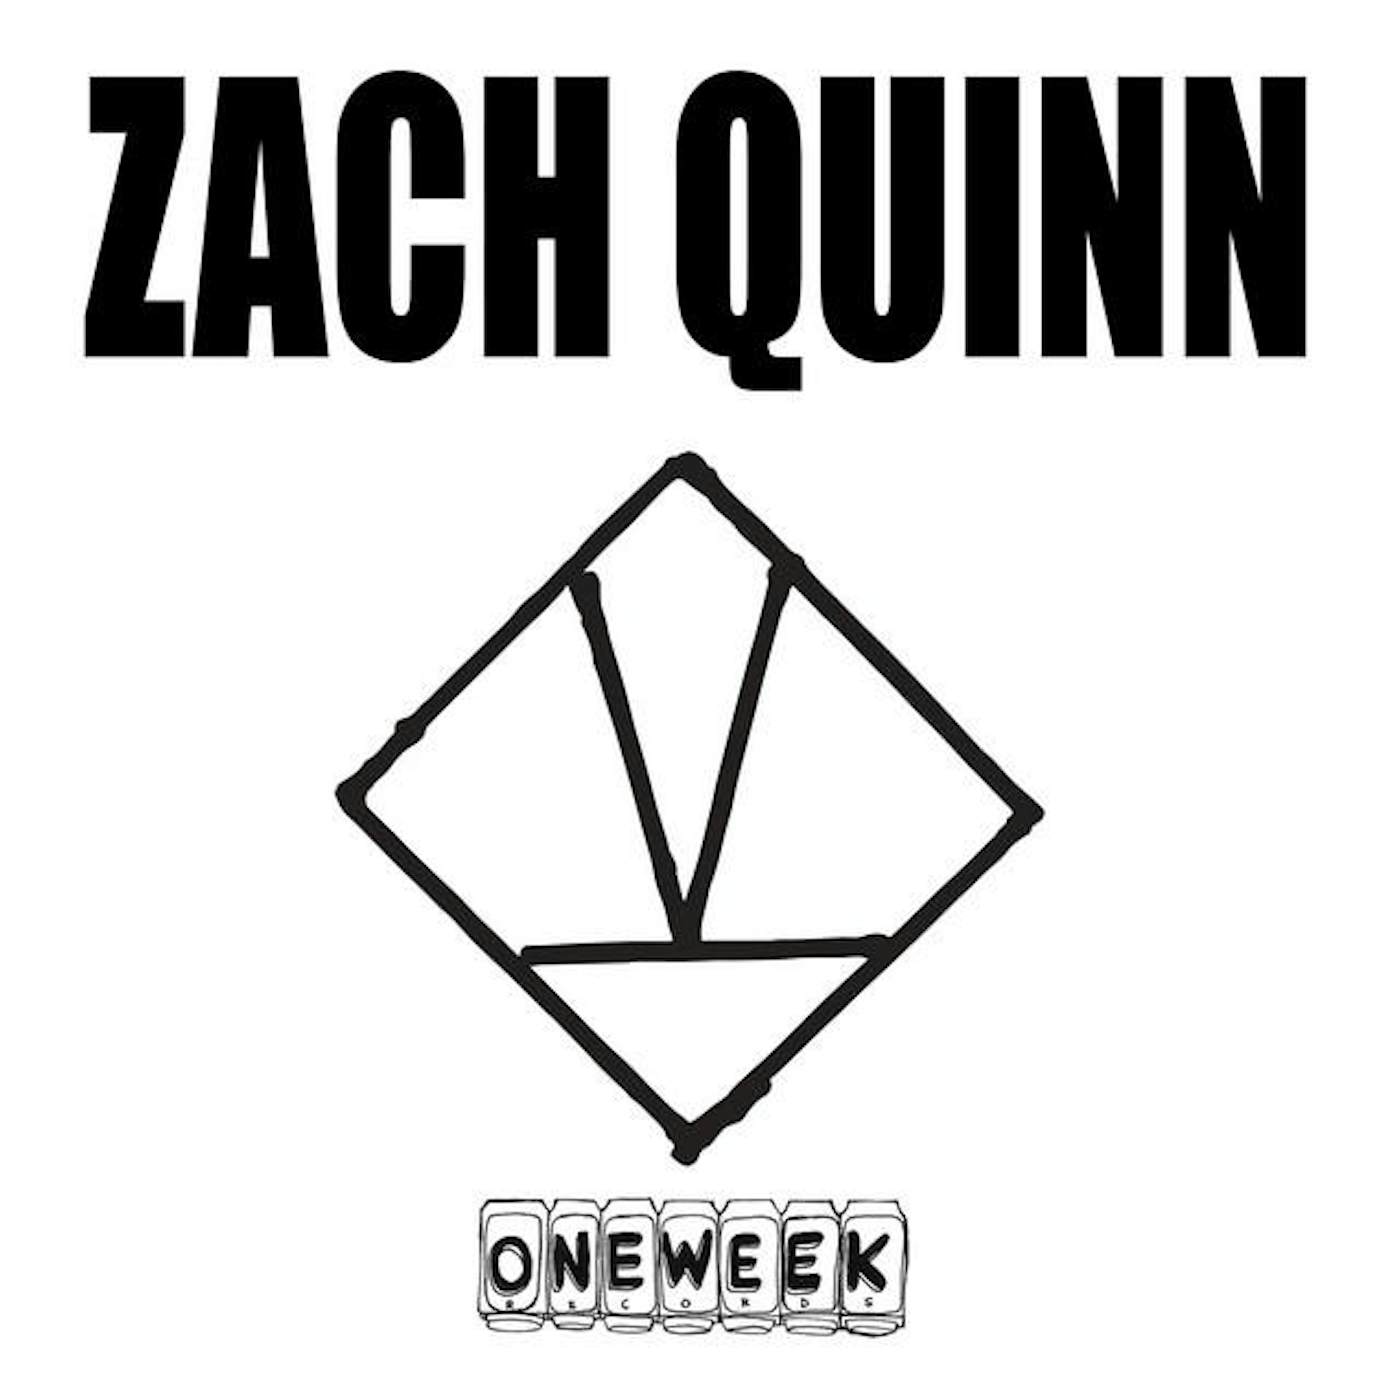 Zach Quinn